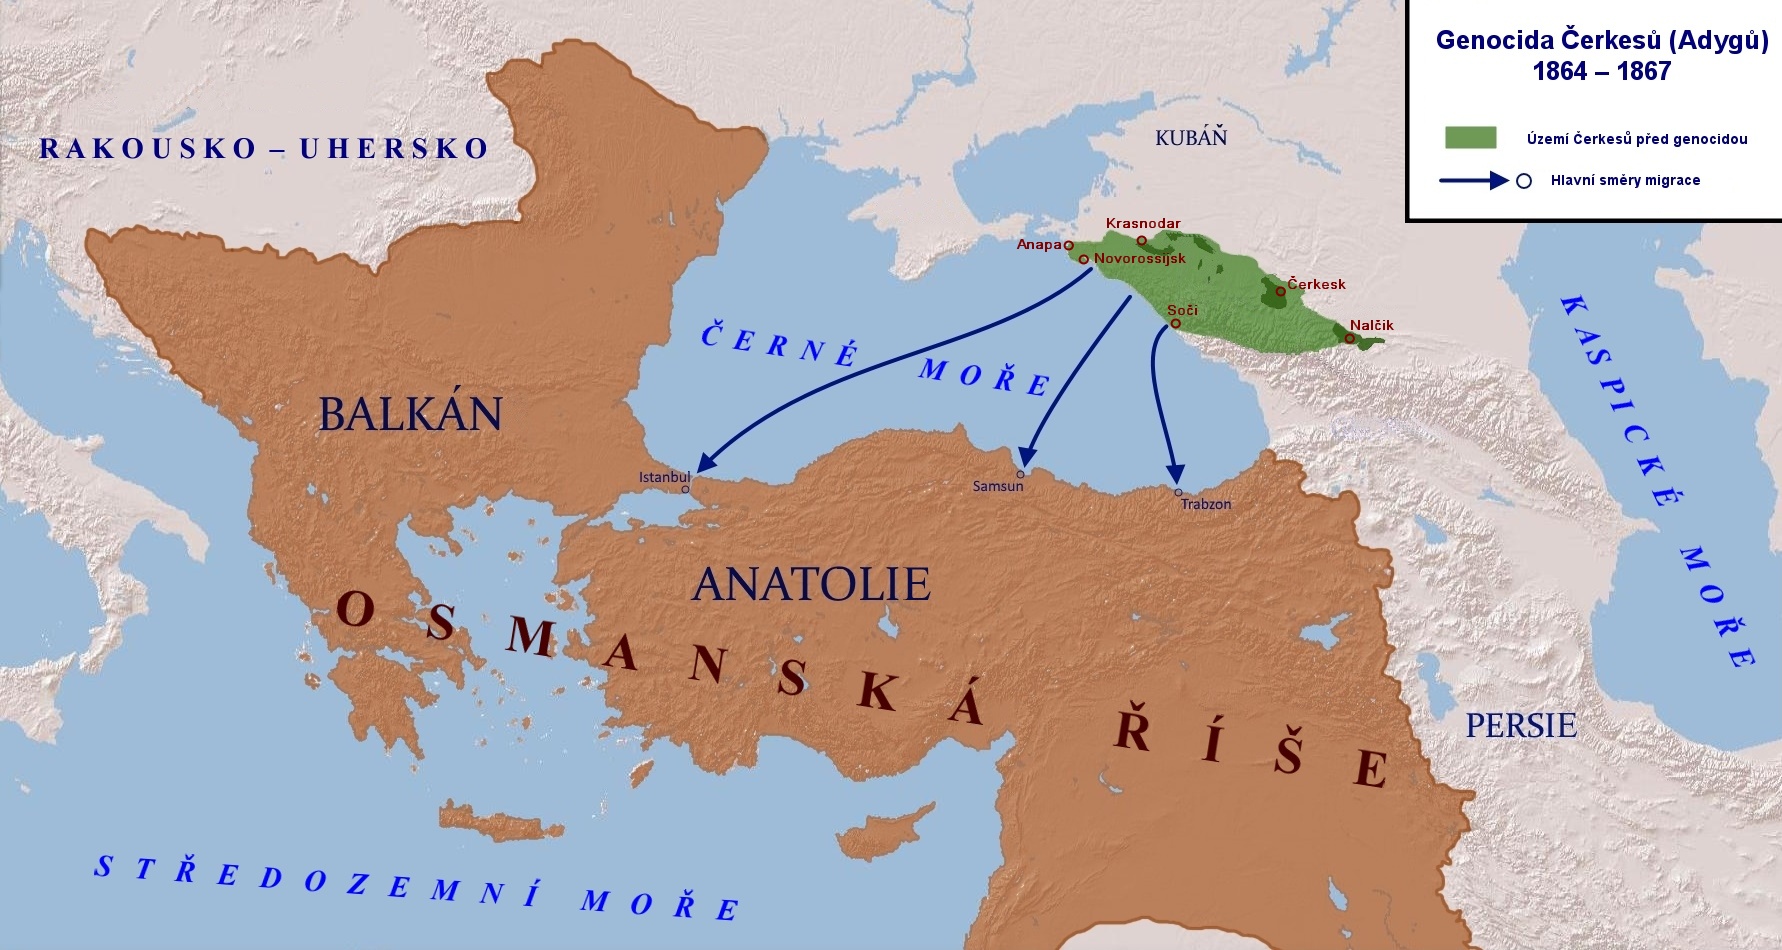 Genocida a obsazení území Čerkesů (Adygů) Ruskem 1864 – 1867 s hlavními směry migrace do Osmanské říše.